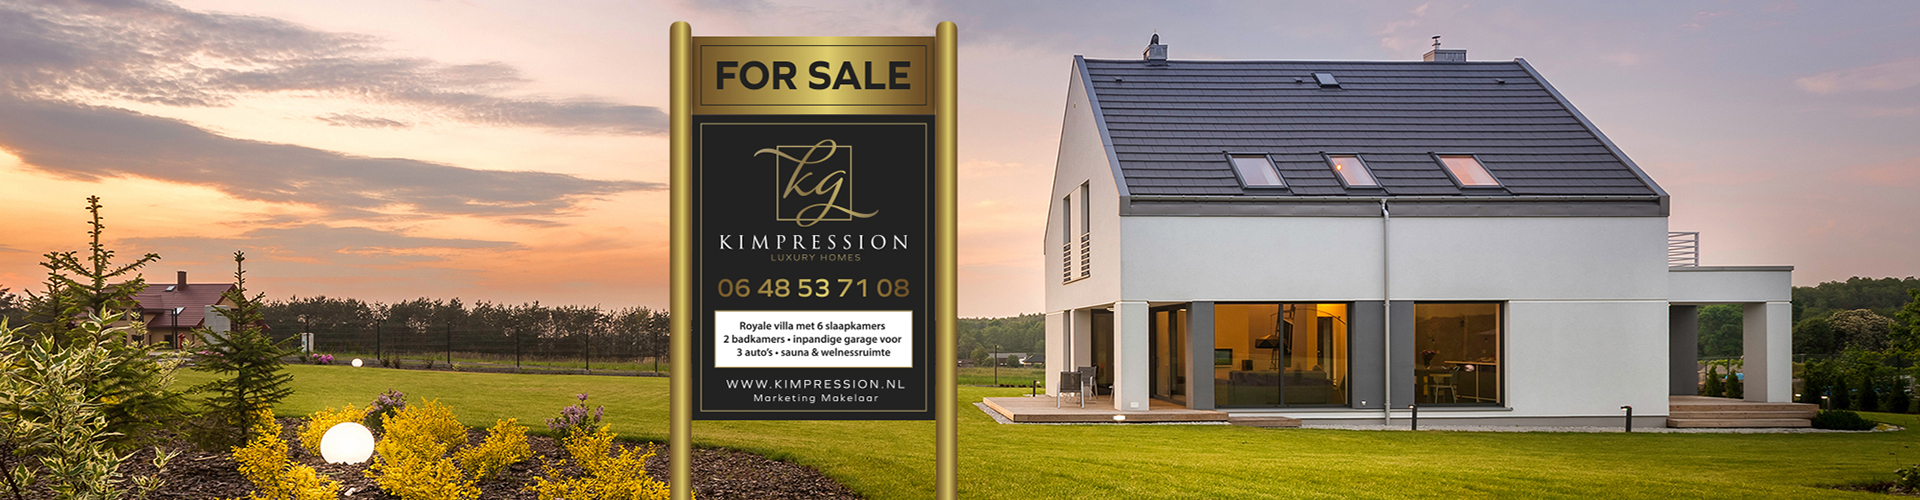 kimpression-for-sale